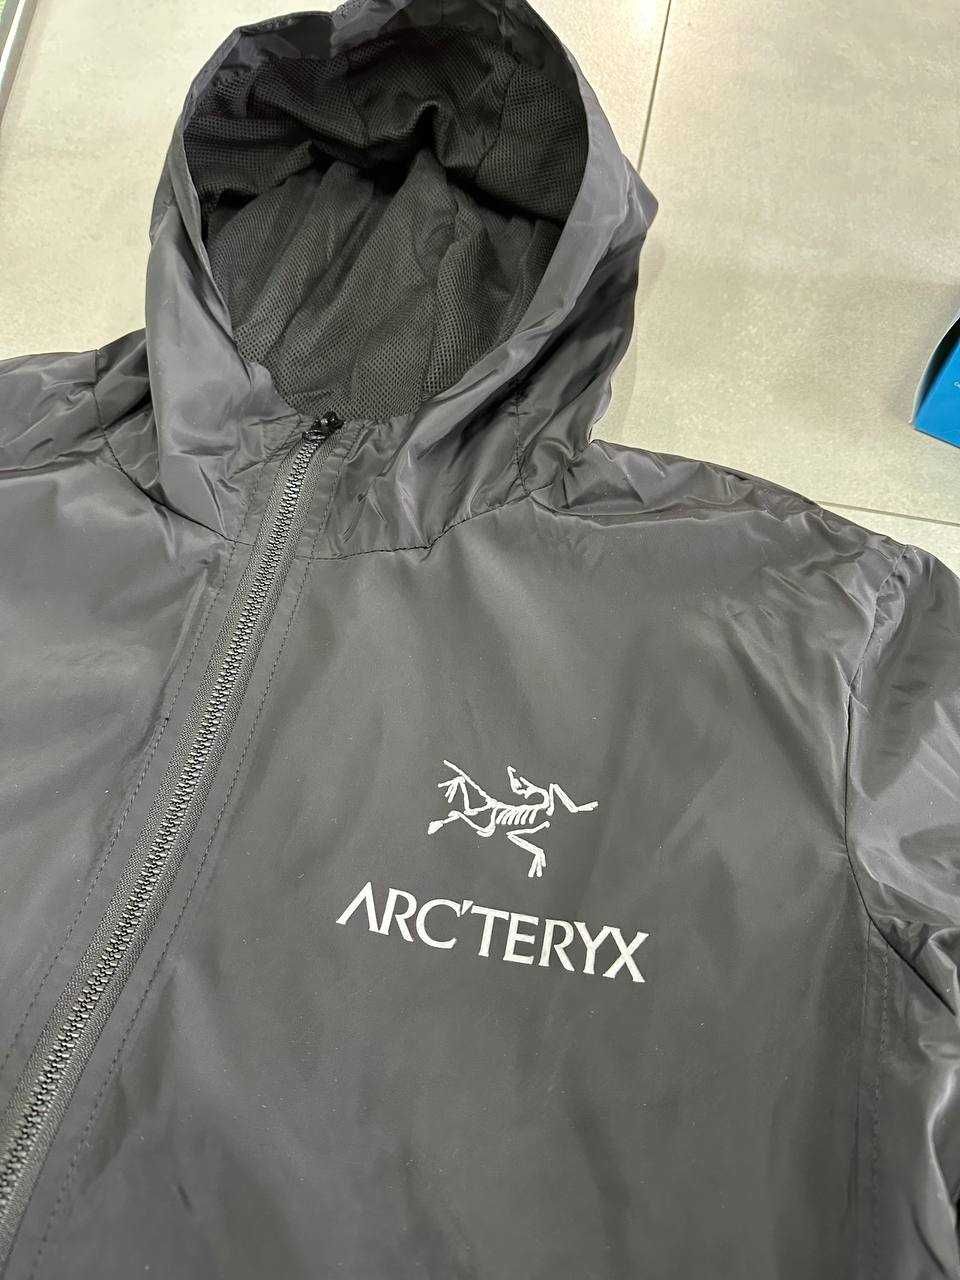 Мужская Ветровка Гортекс Артерікс / Arcteryx мужская куртка Gore-Tex